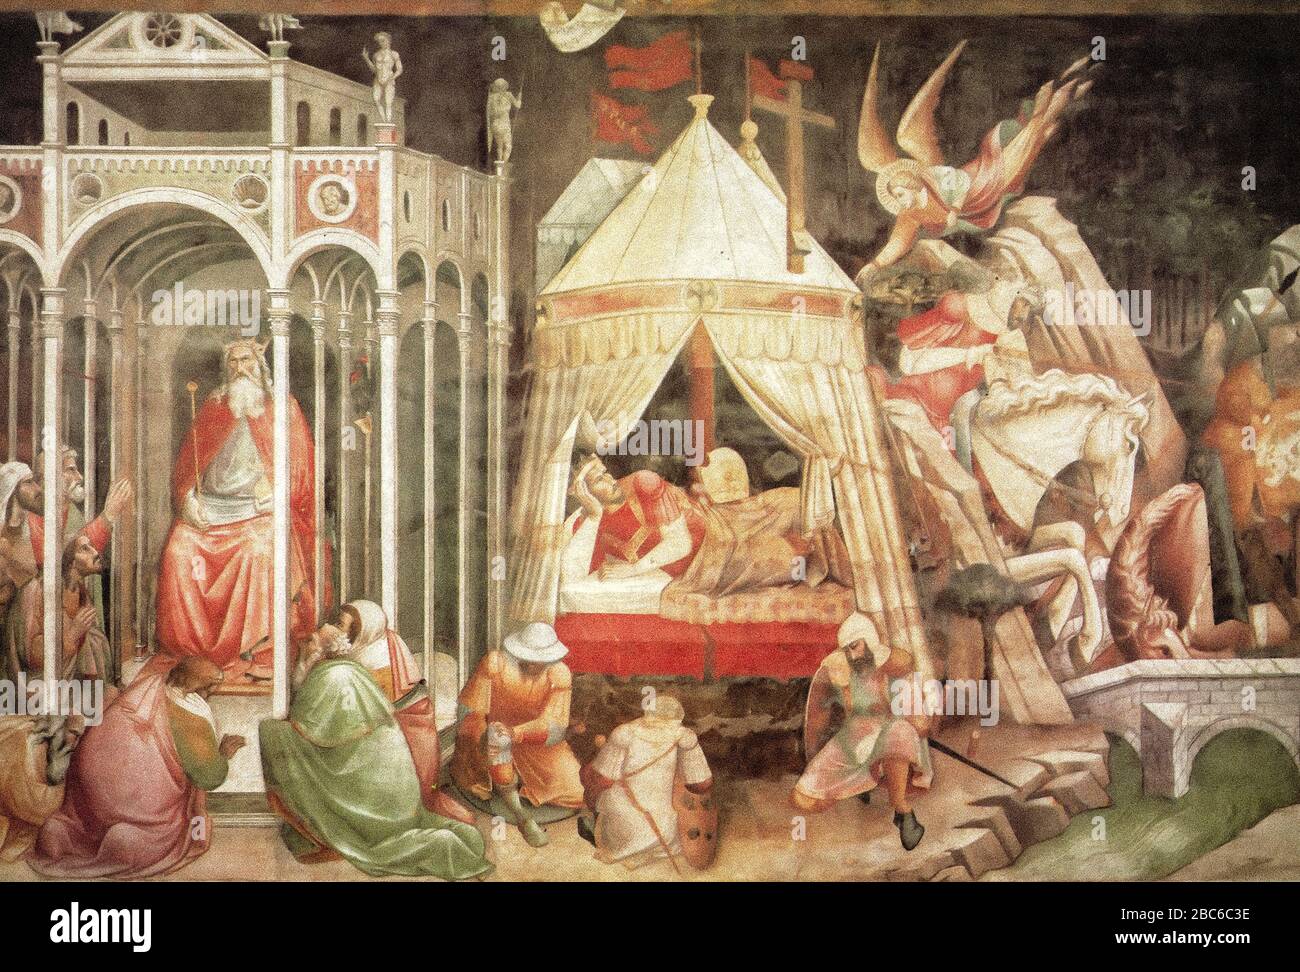 Italia Toscana Florencia - Basílica de Santa Croce - la Adoración de Crosoe, el sueño de Heraclius, el duelo de Heraclius, fresco entre 1388 y 1392 Foto de stock